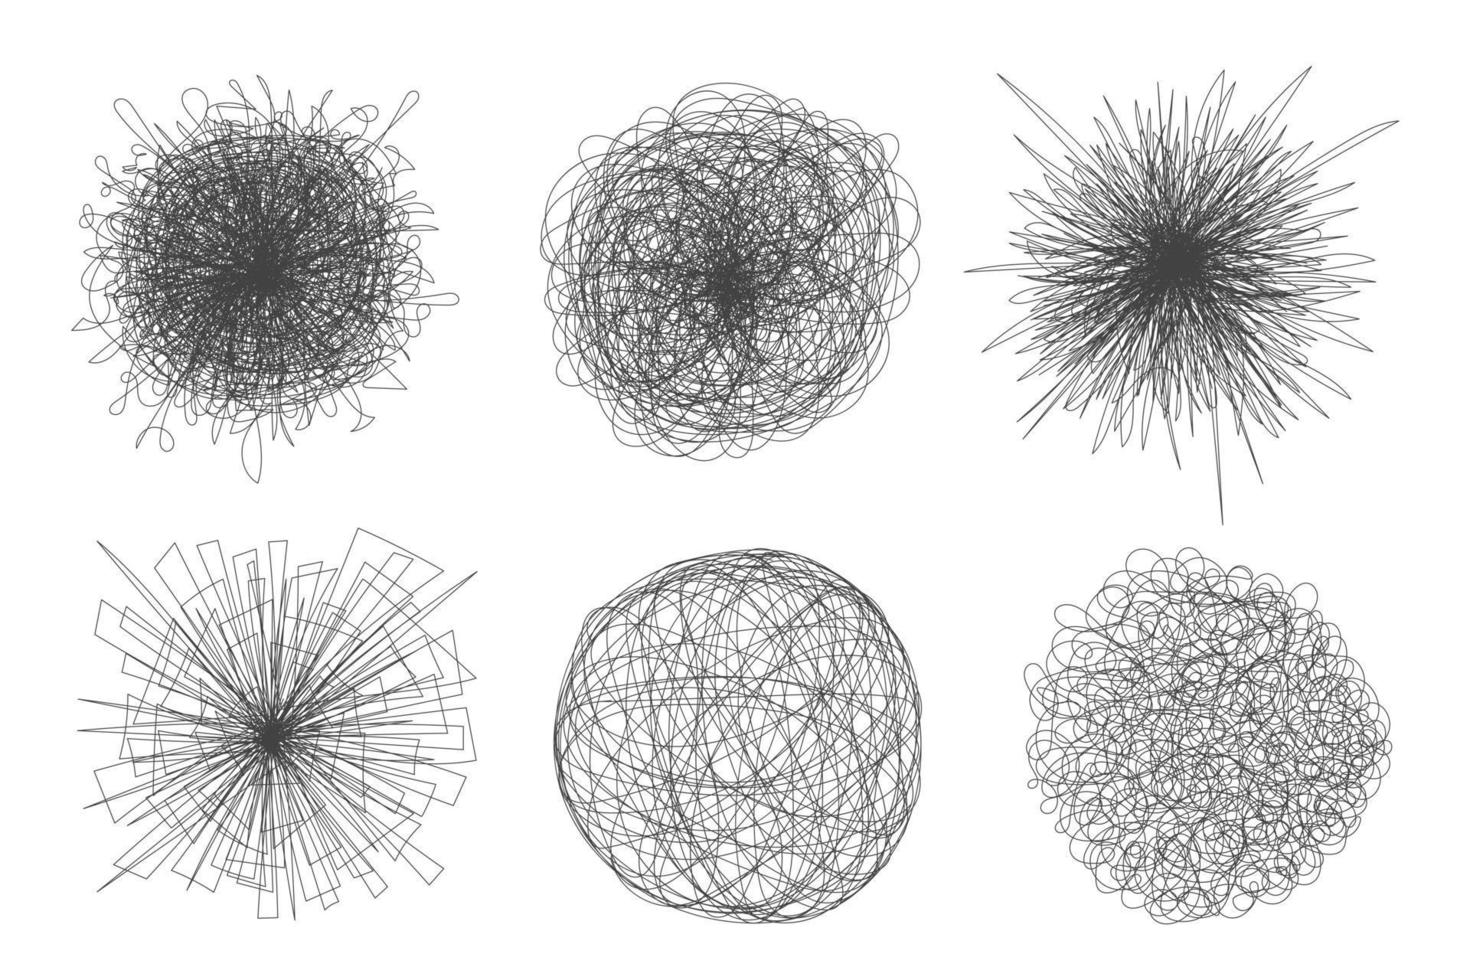 Verworrenes Chaos abstrakte handgezeichnete unordentliche Scribble-Ball-Vektor-Illustrationsset. vektor